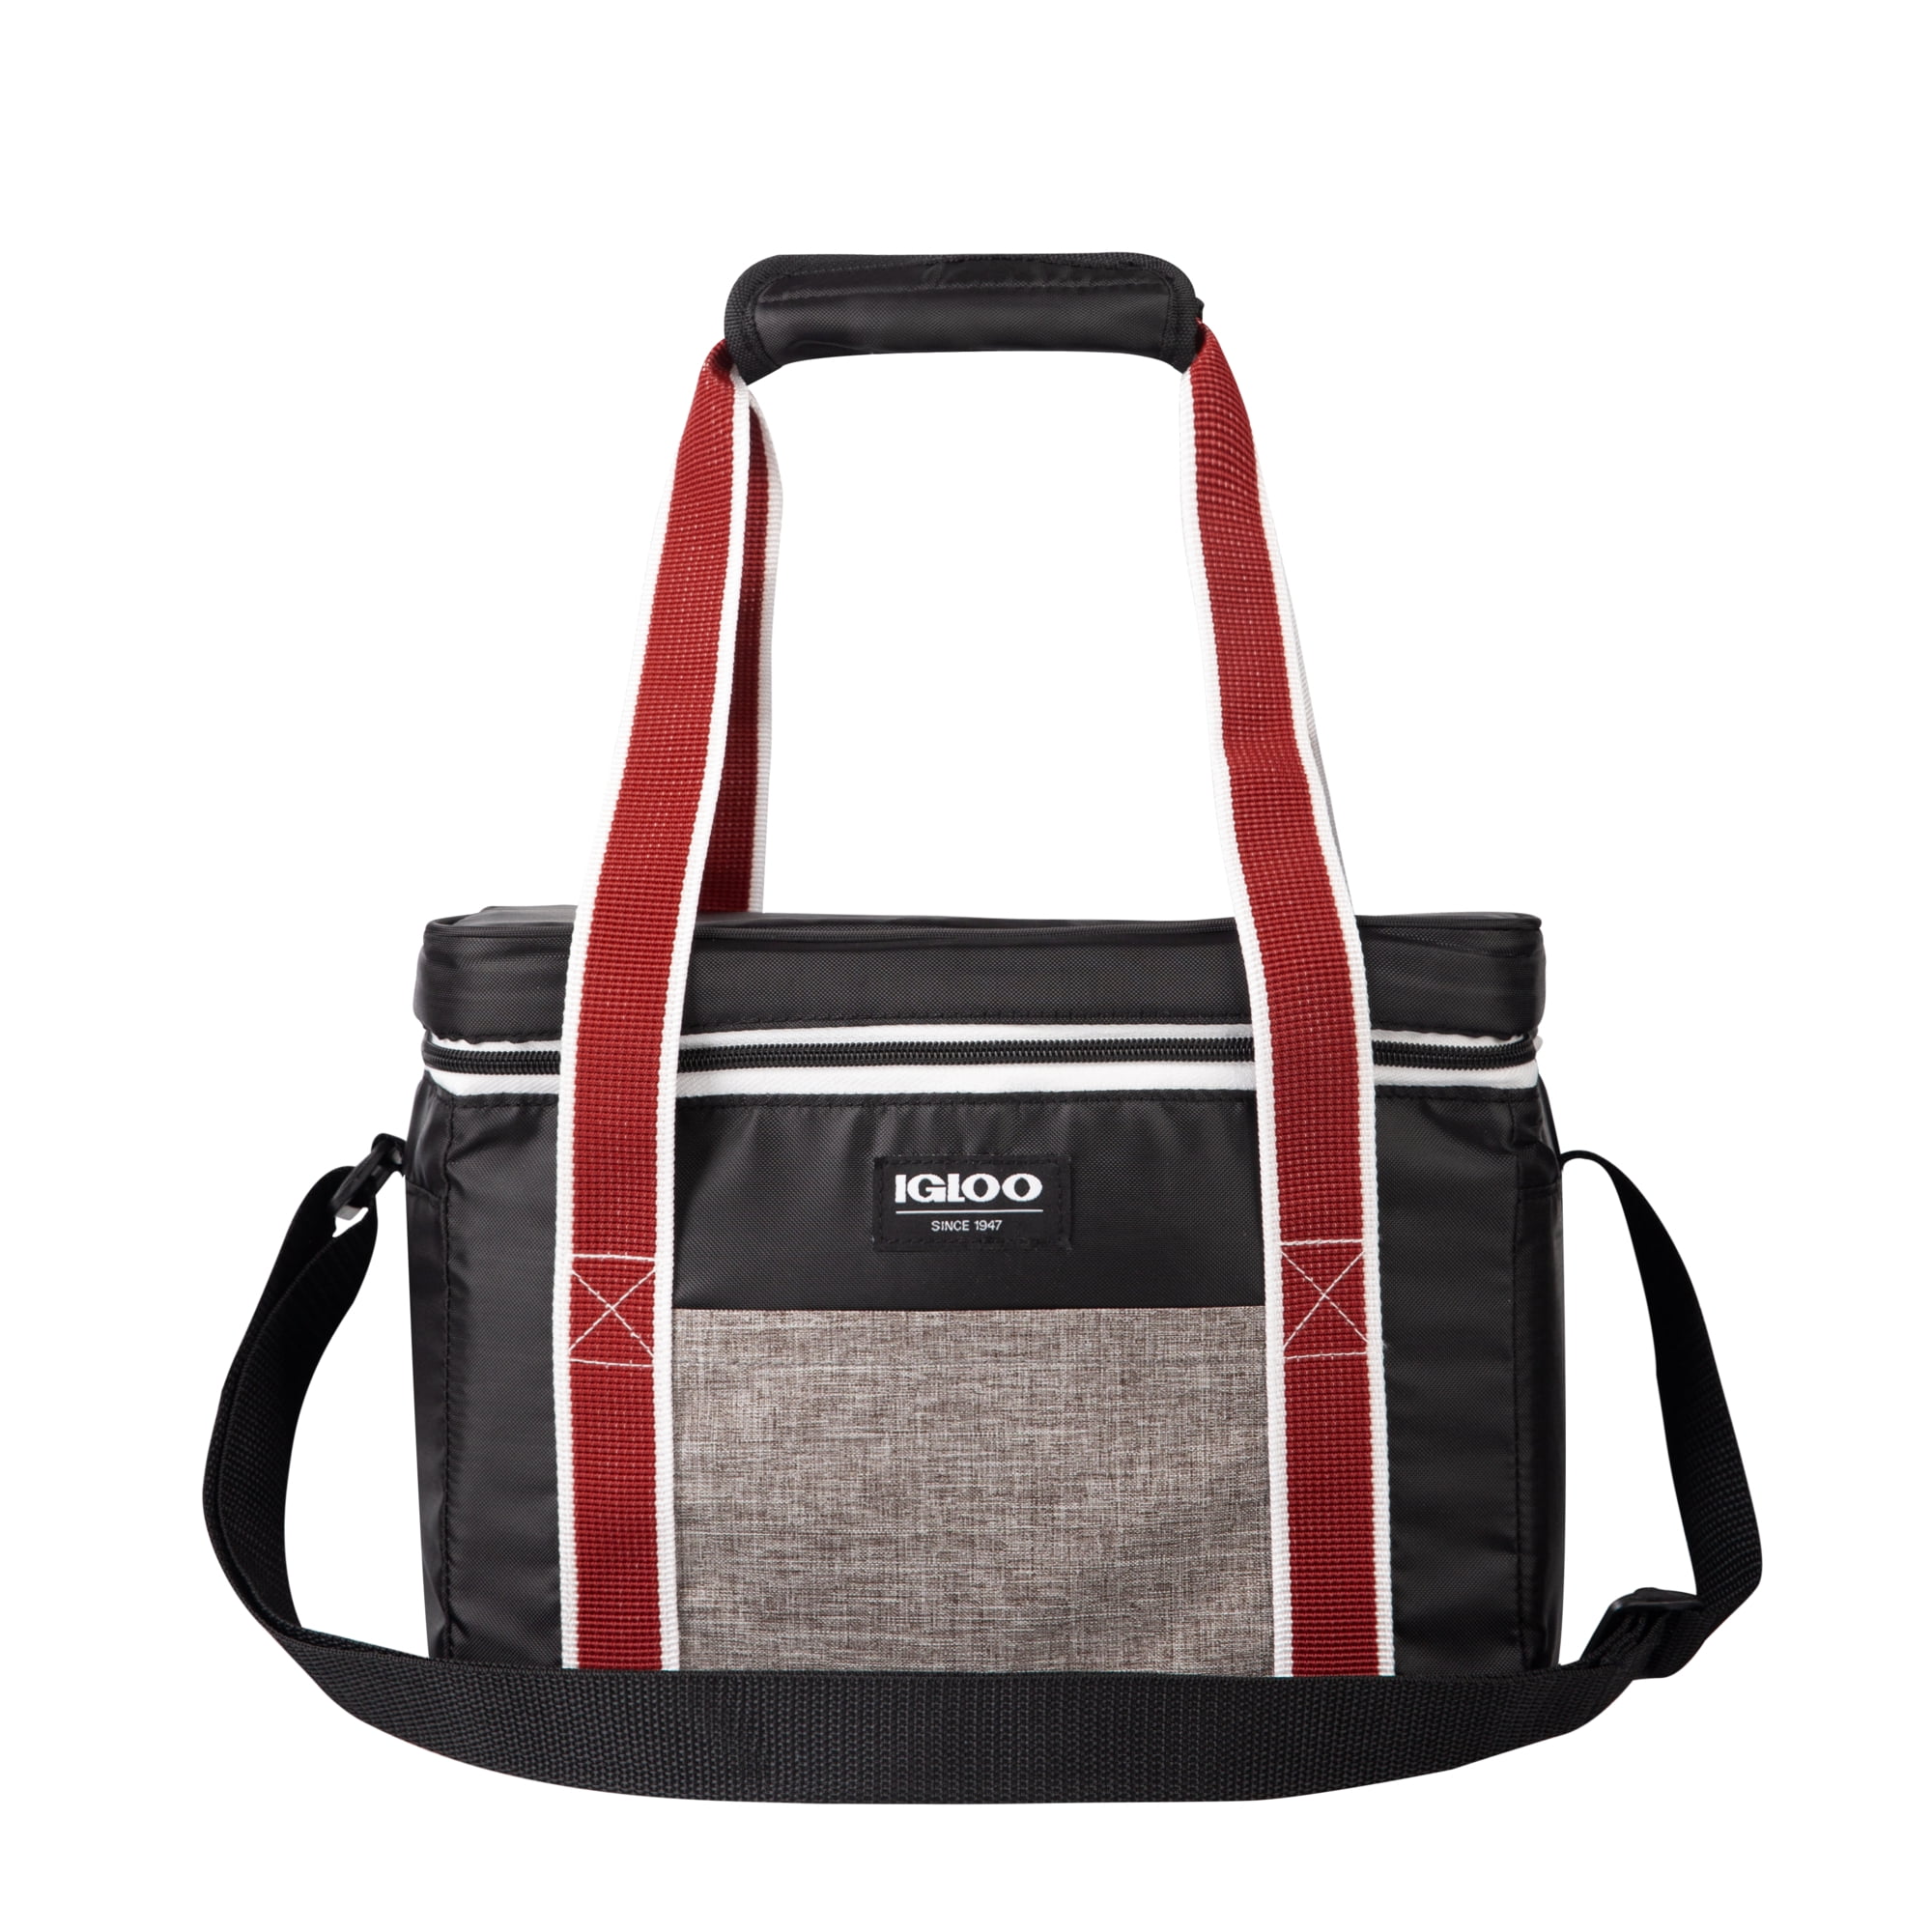 Insulated lunch Bag Coolers 12 can adjustable shoulder strap slip mesh pocket 